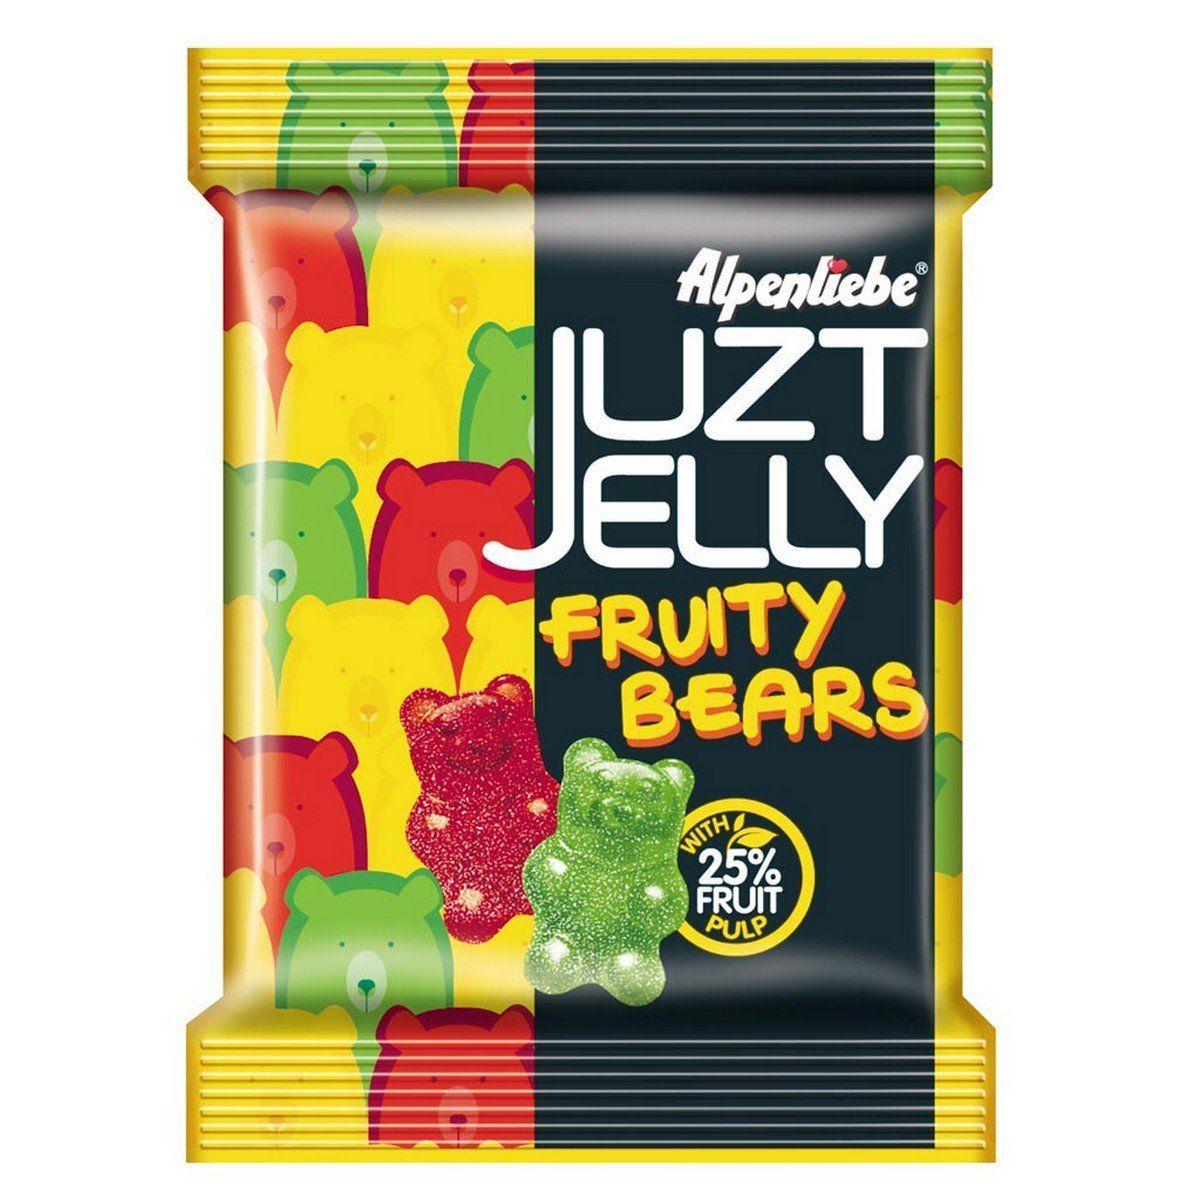 Alpenlibe Juzt Jelly Fruity Bears Image